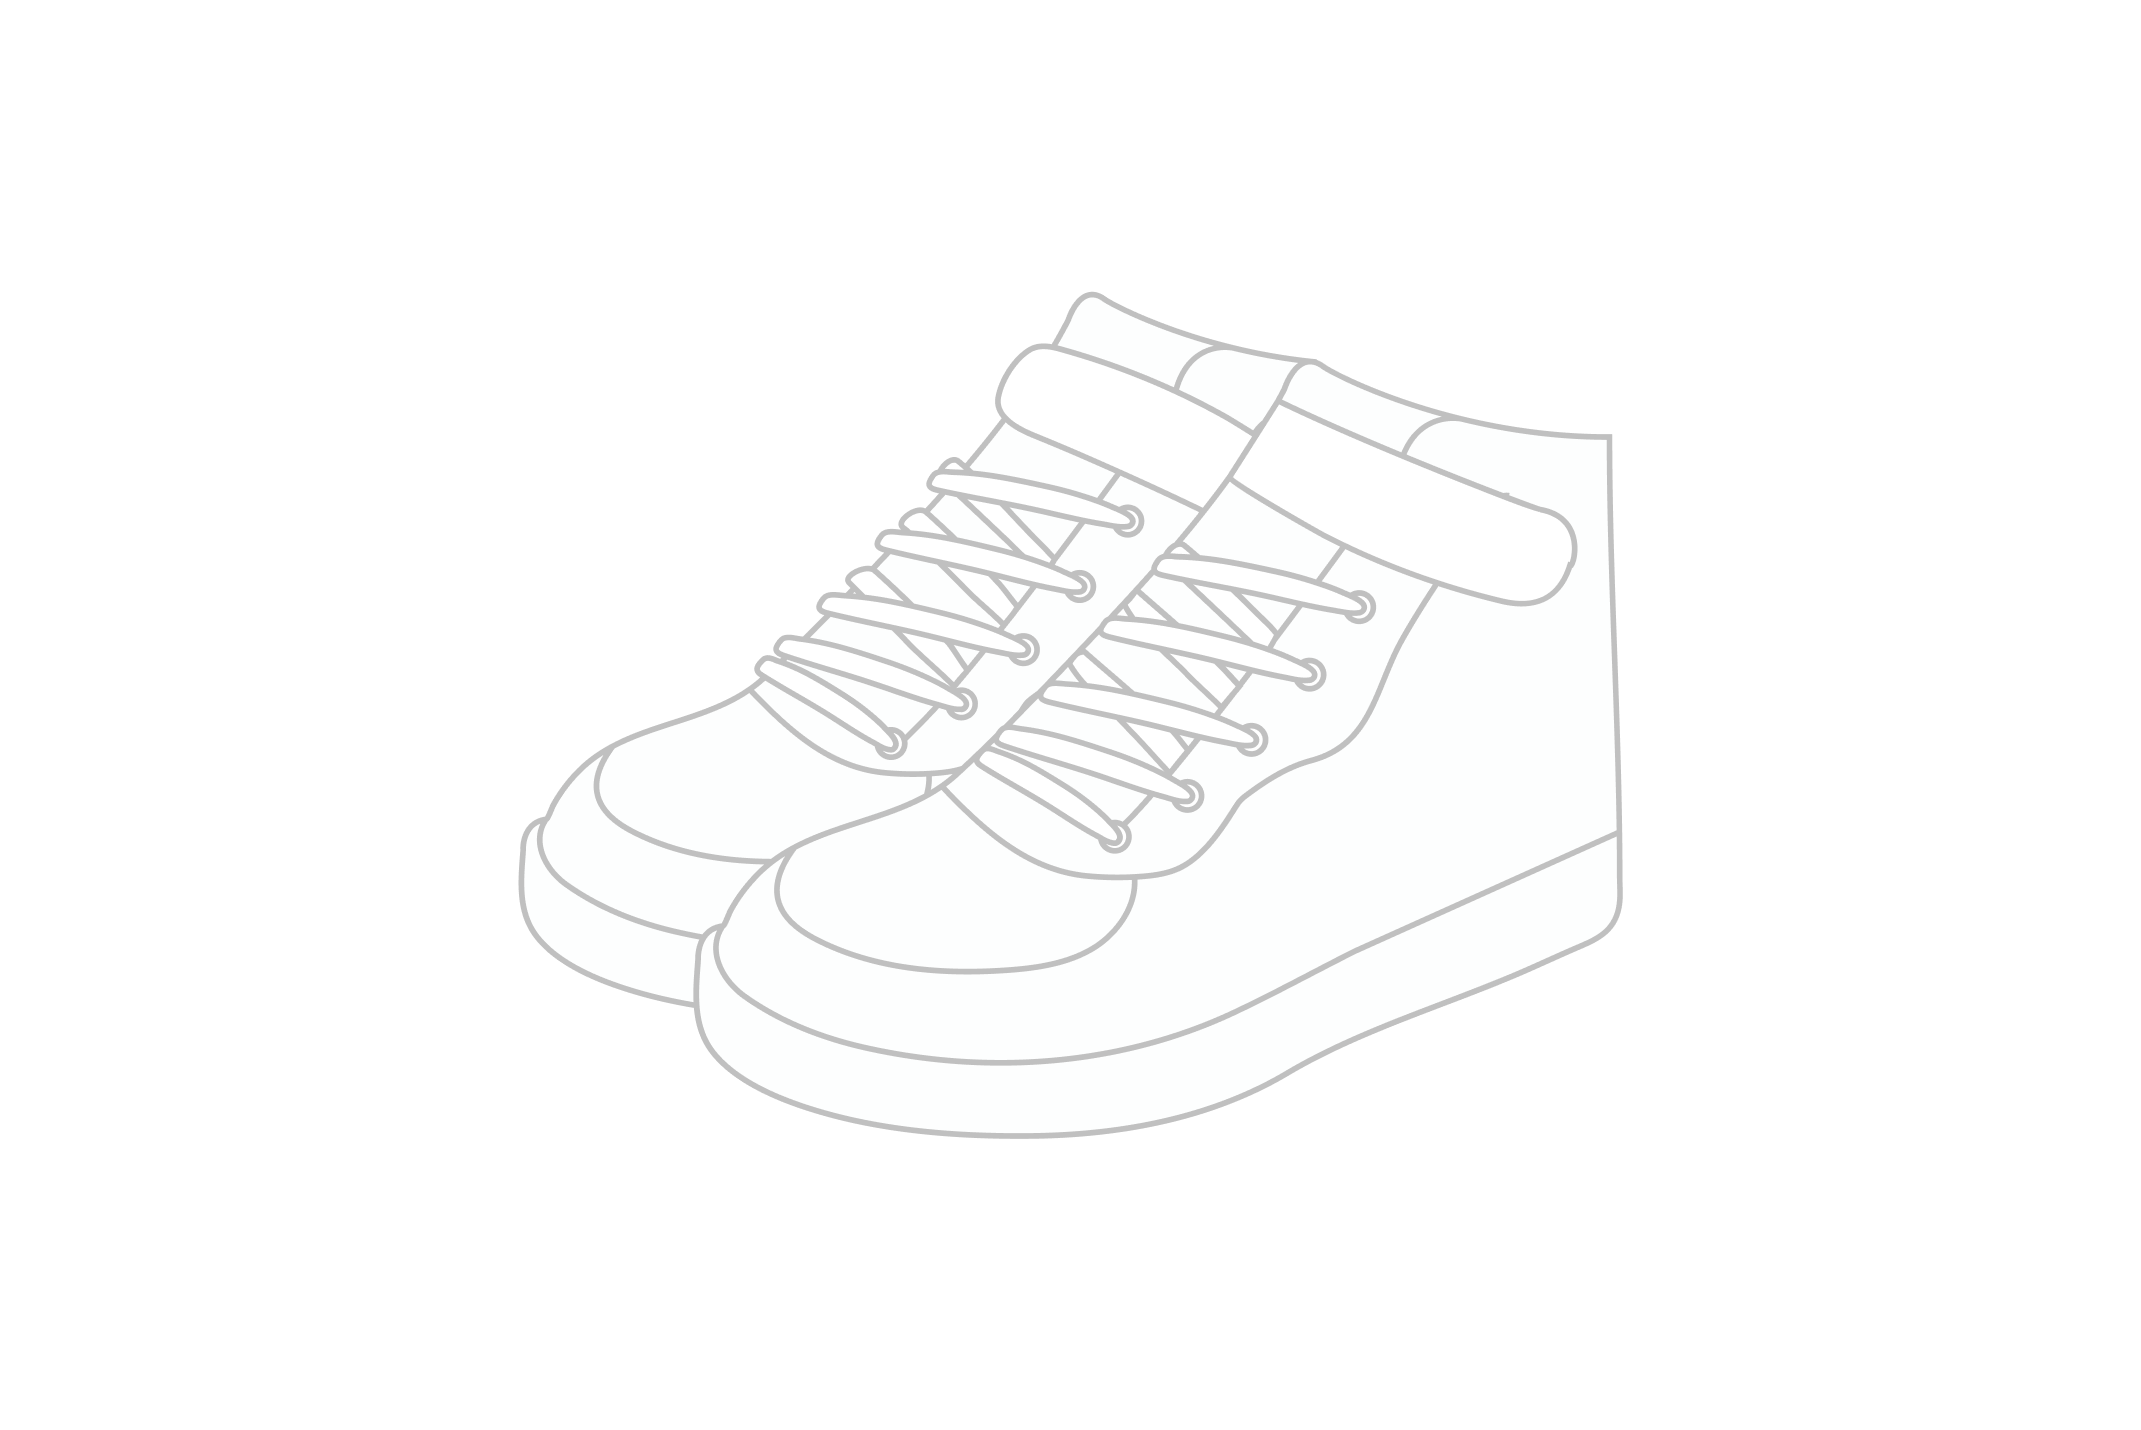 A black outline illustration of a shoe